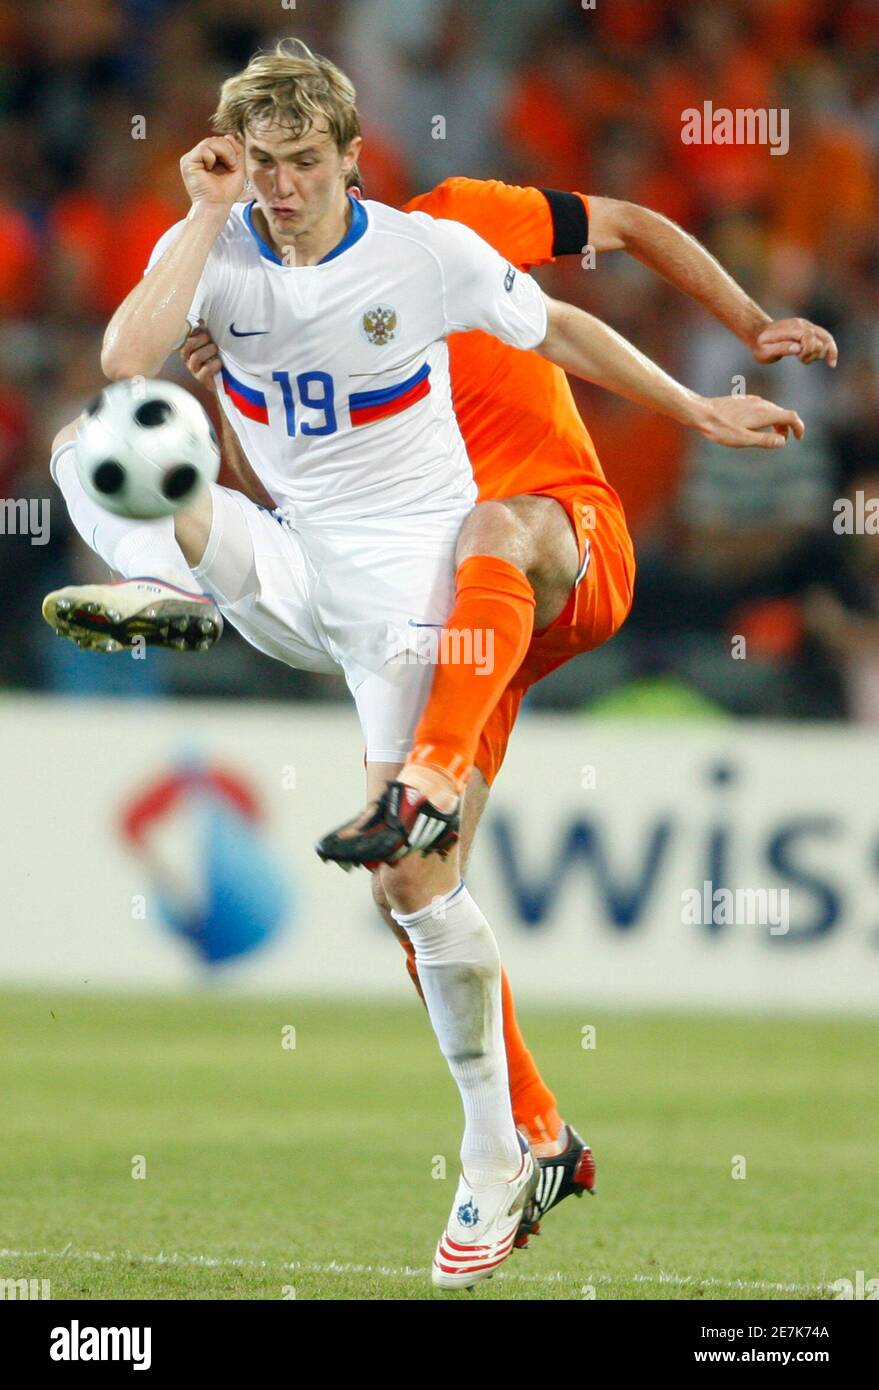 Joris Mathijsen aux pays-Bas et Pavlyuchenko en Russie (19) se battent pour  le ballon lors de leur match de football Euro 2008 quart de finale au stade  St Jakob Park de Bâle,